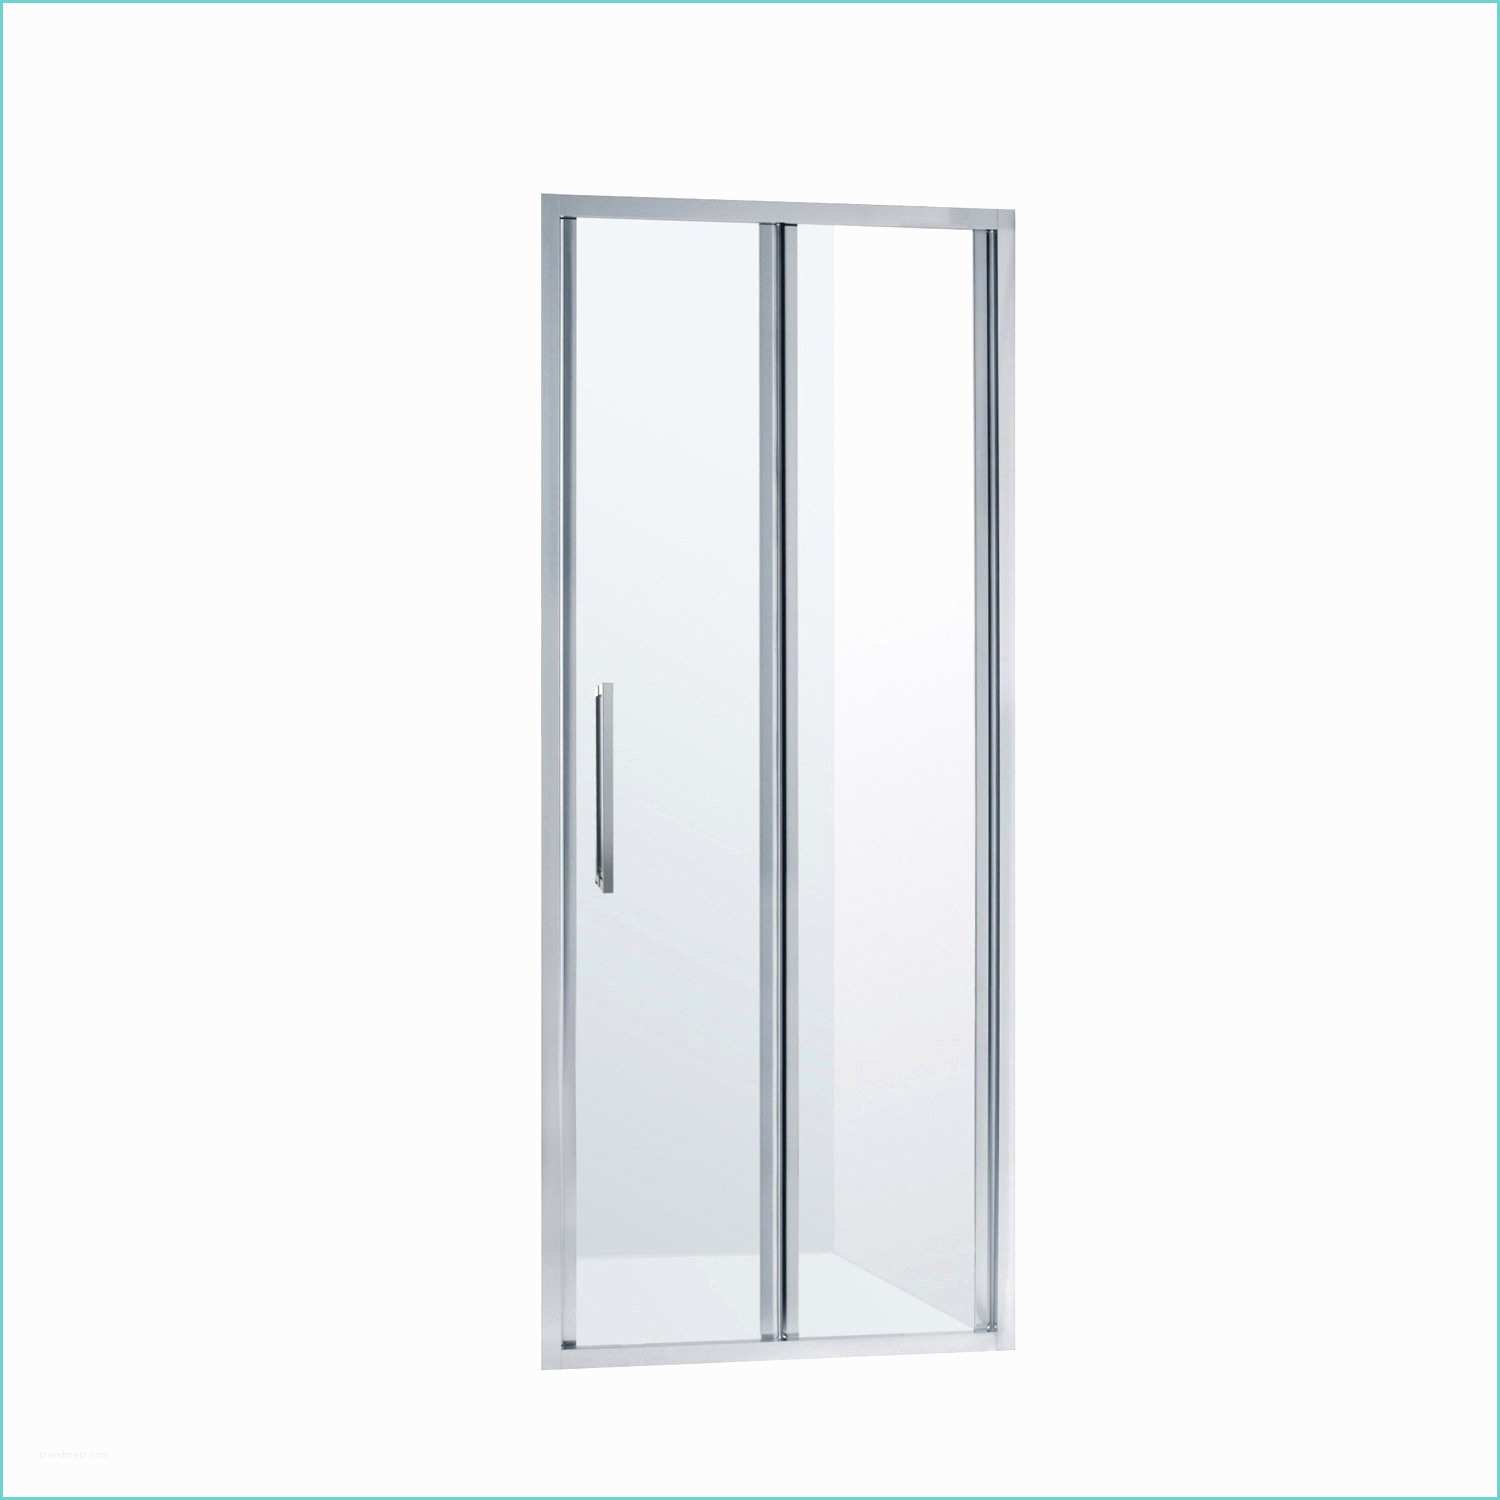 Леруа мерлен двери для ванной. Панель Sensea dado 80x185 см. Sensea Nerea 70х185 см. Душевая дверь Sensea Essential 100х185 см цвет хром. Sensea Essential душевая дверь 80×185.